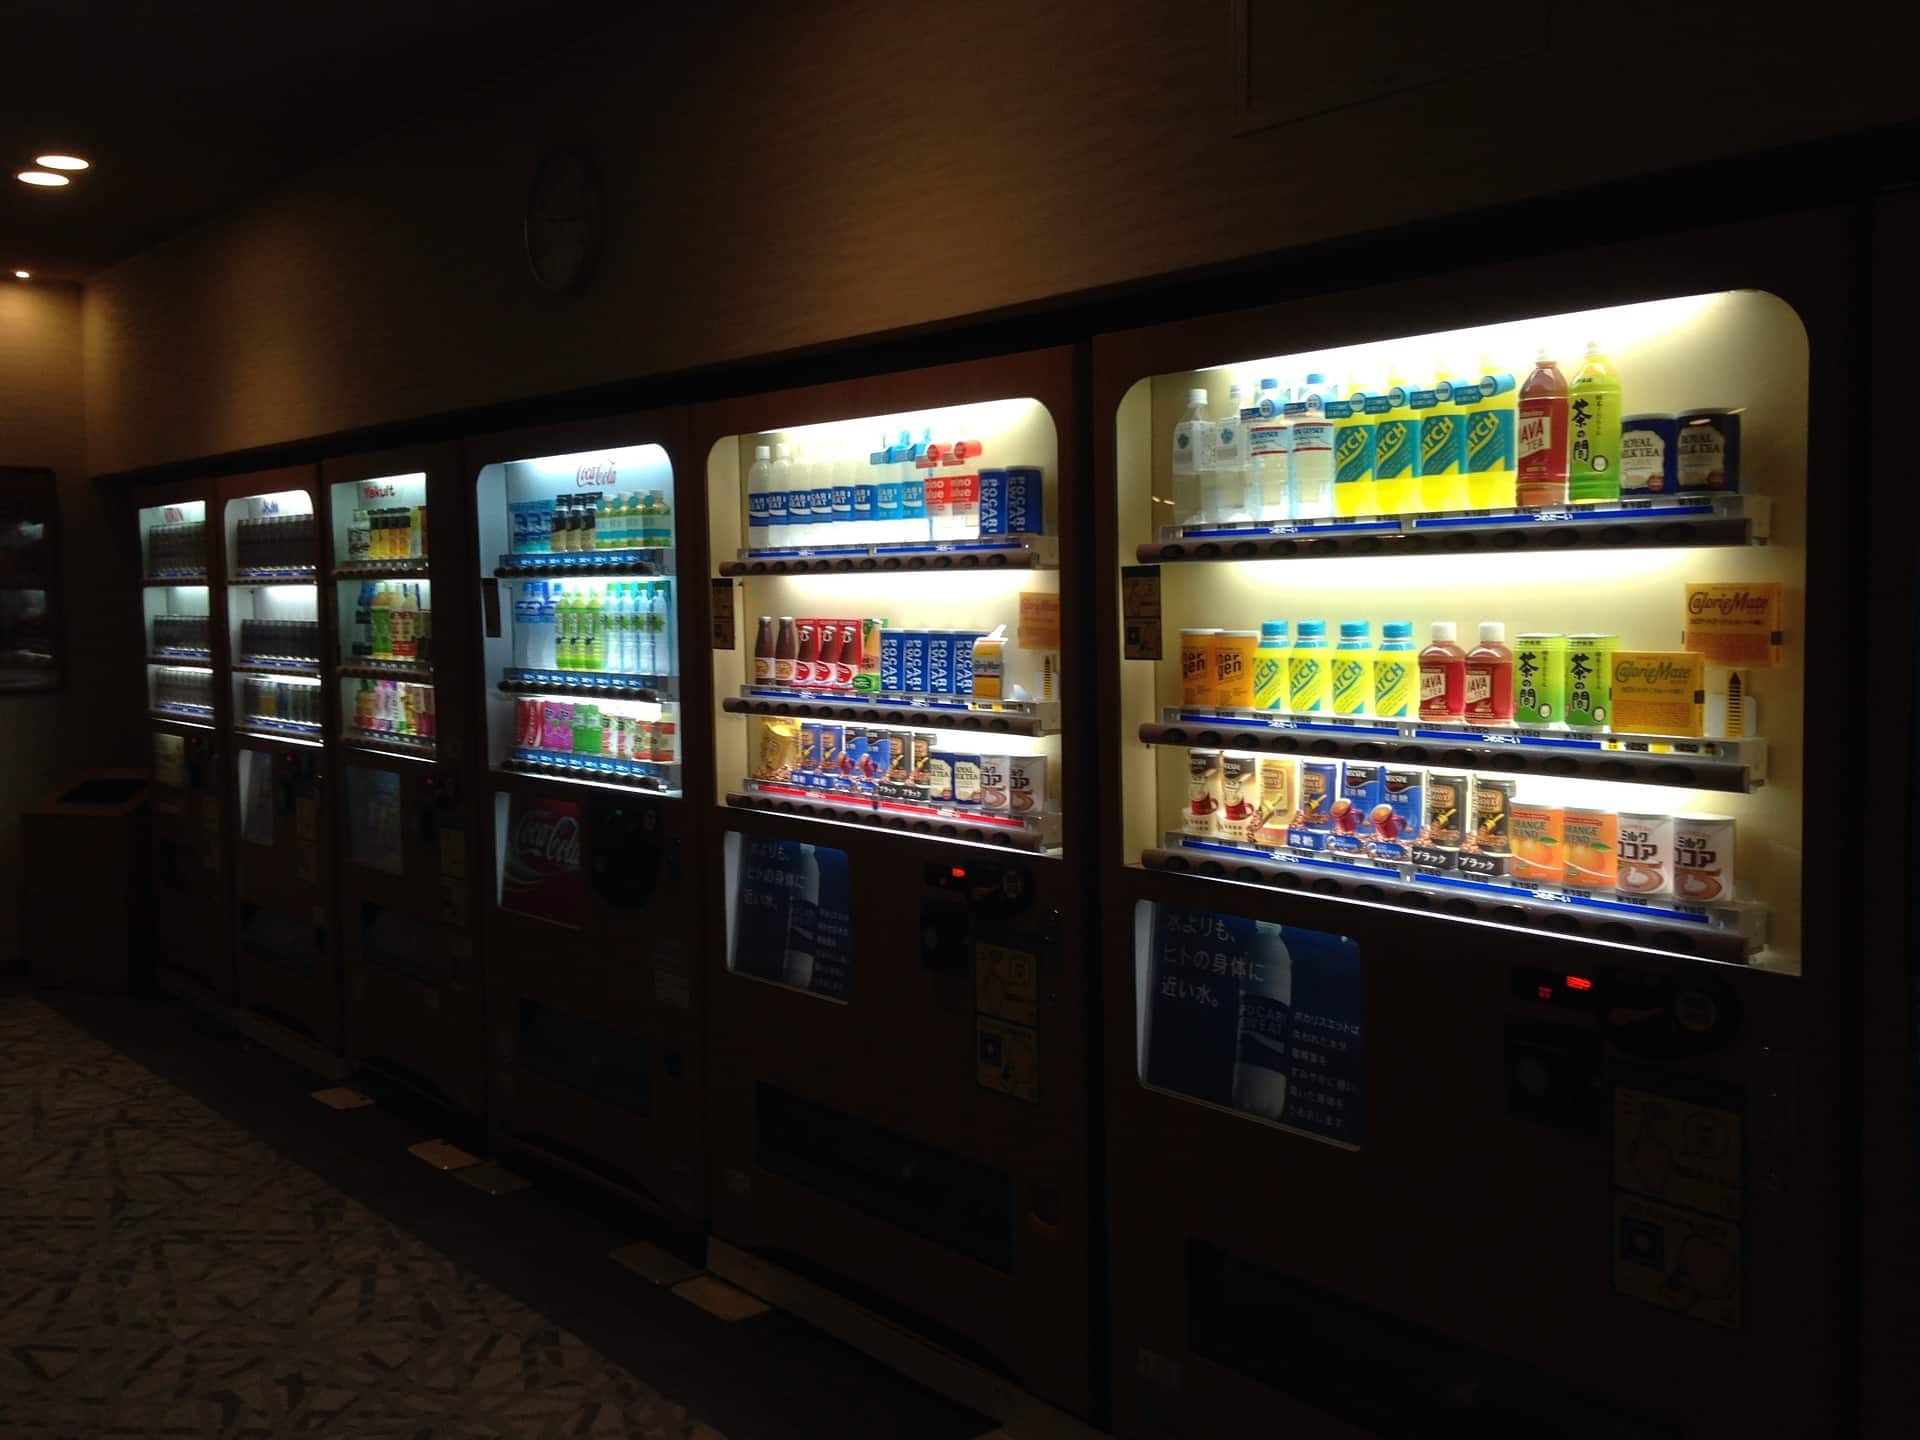 Maquinas de vending para refrescos